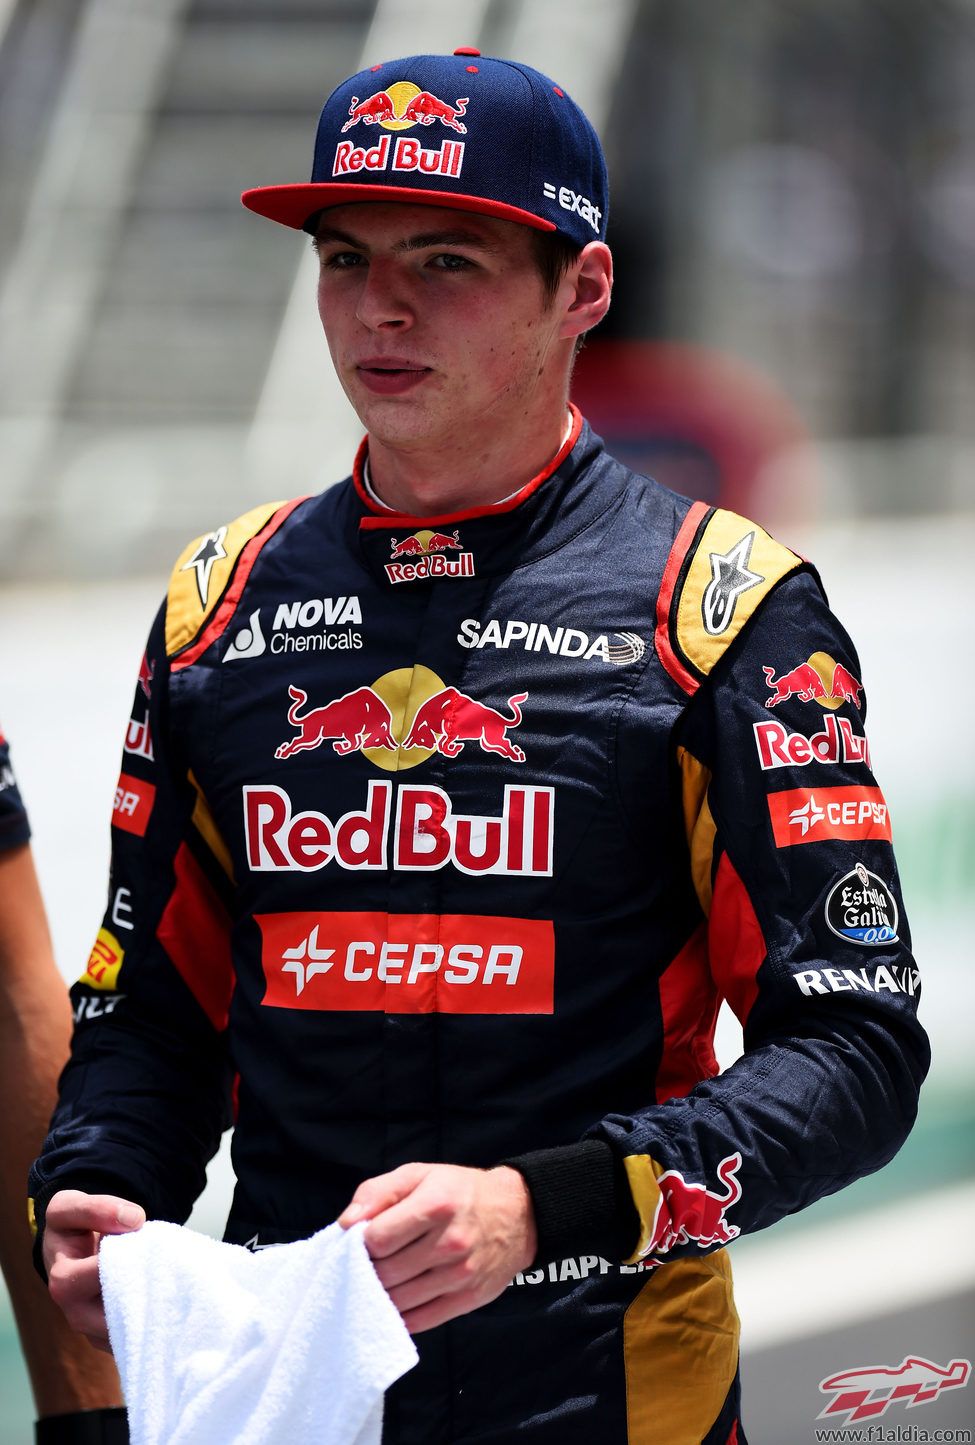 Max Verstappen consigue llegar a la Q3